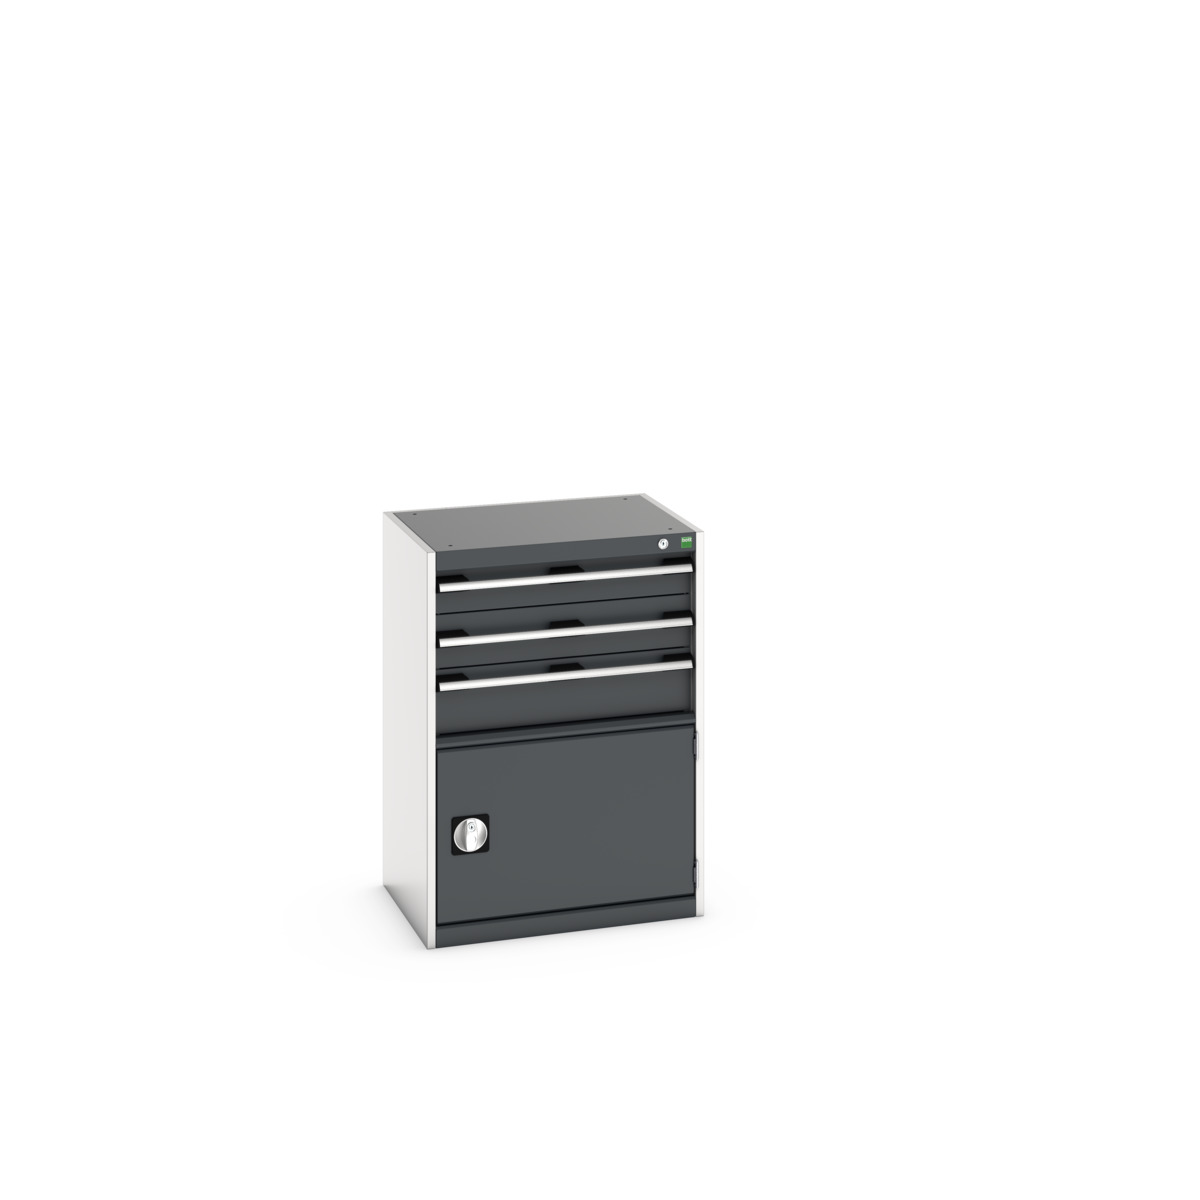 40011048. - cubio drawer-door cabinet